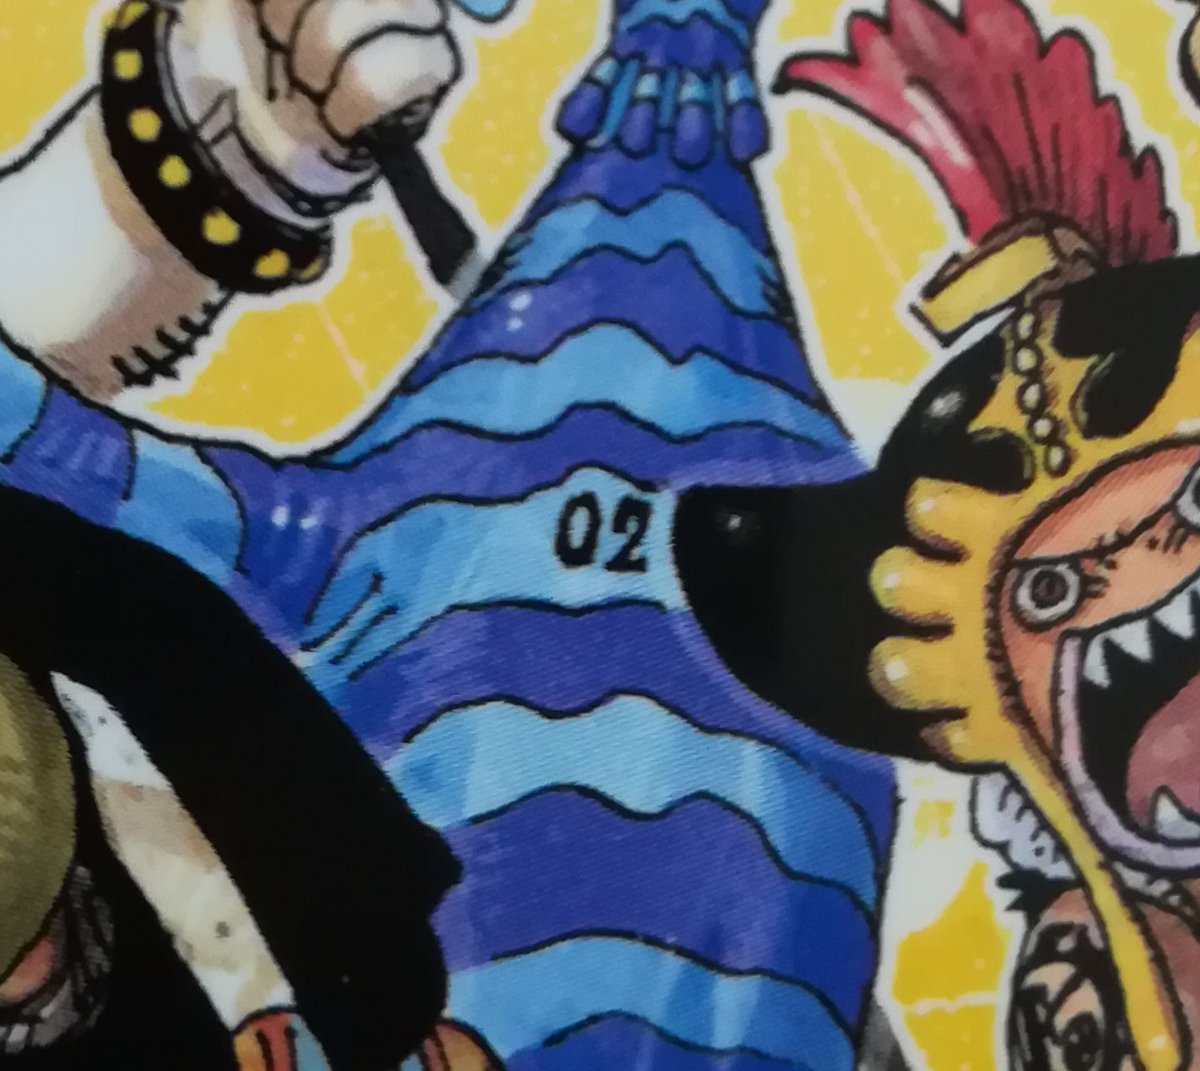 One Pieceが大好きな神木 スーパーカミキカンデ いや たまたまだと思います ゼオ プライドが高い 自称新魚人海賊団ナンバー2 が私的にはしっくりきます